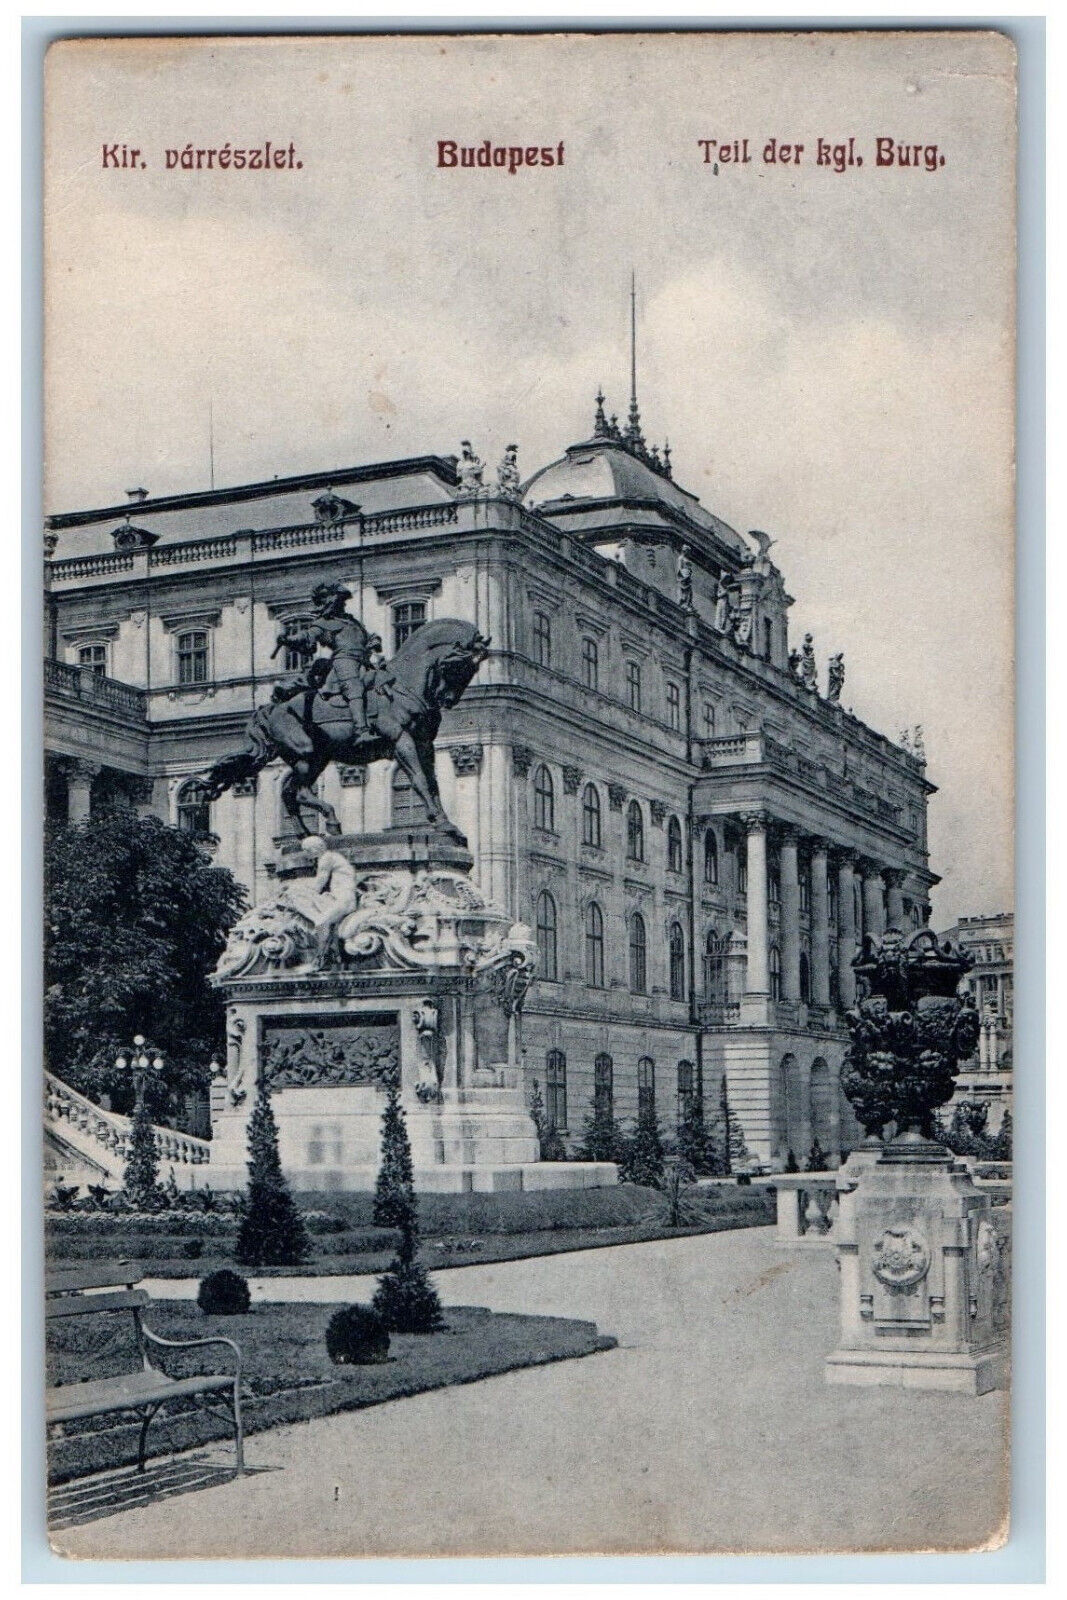 Budapest Hungary Postard Kir. Varreszlet Part of Royal Family Castle 1930